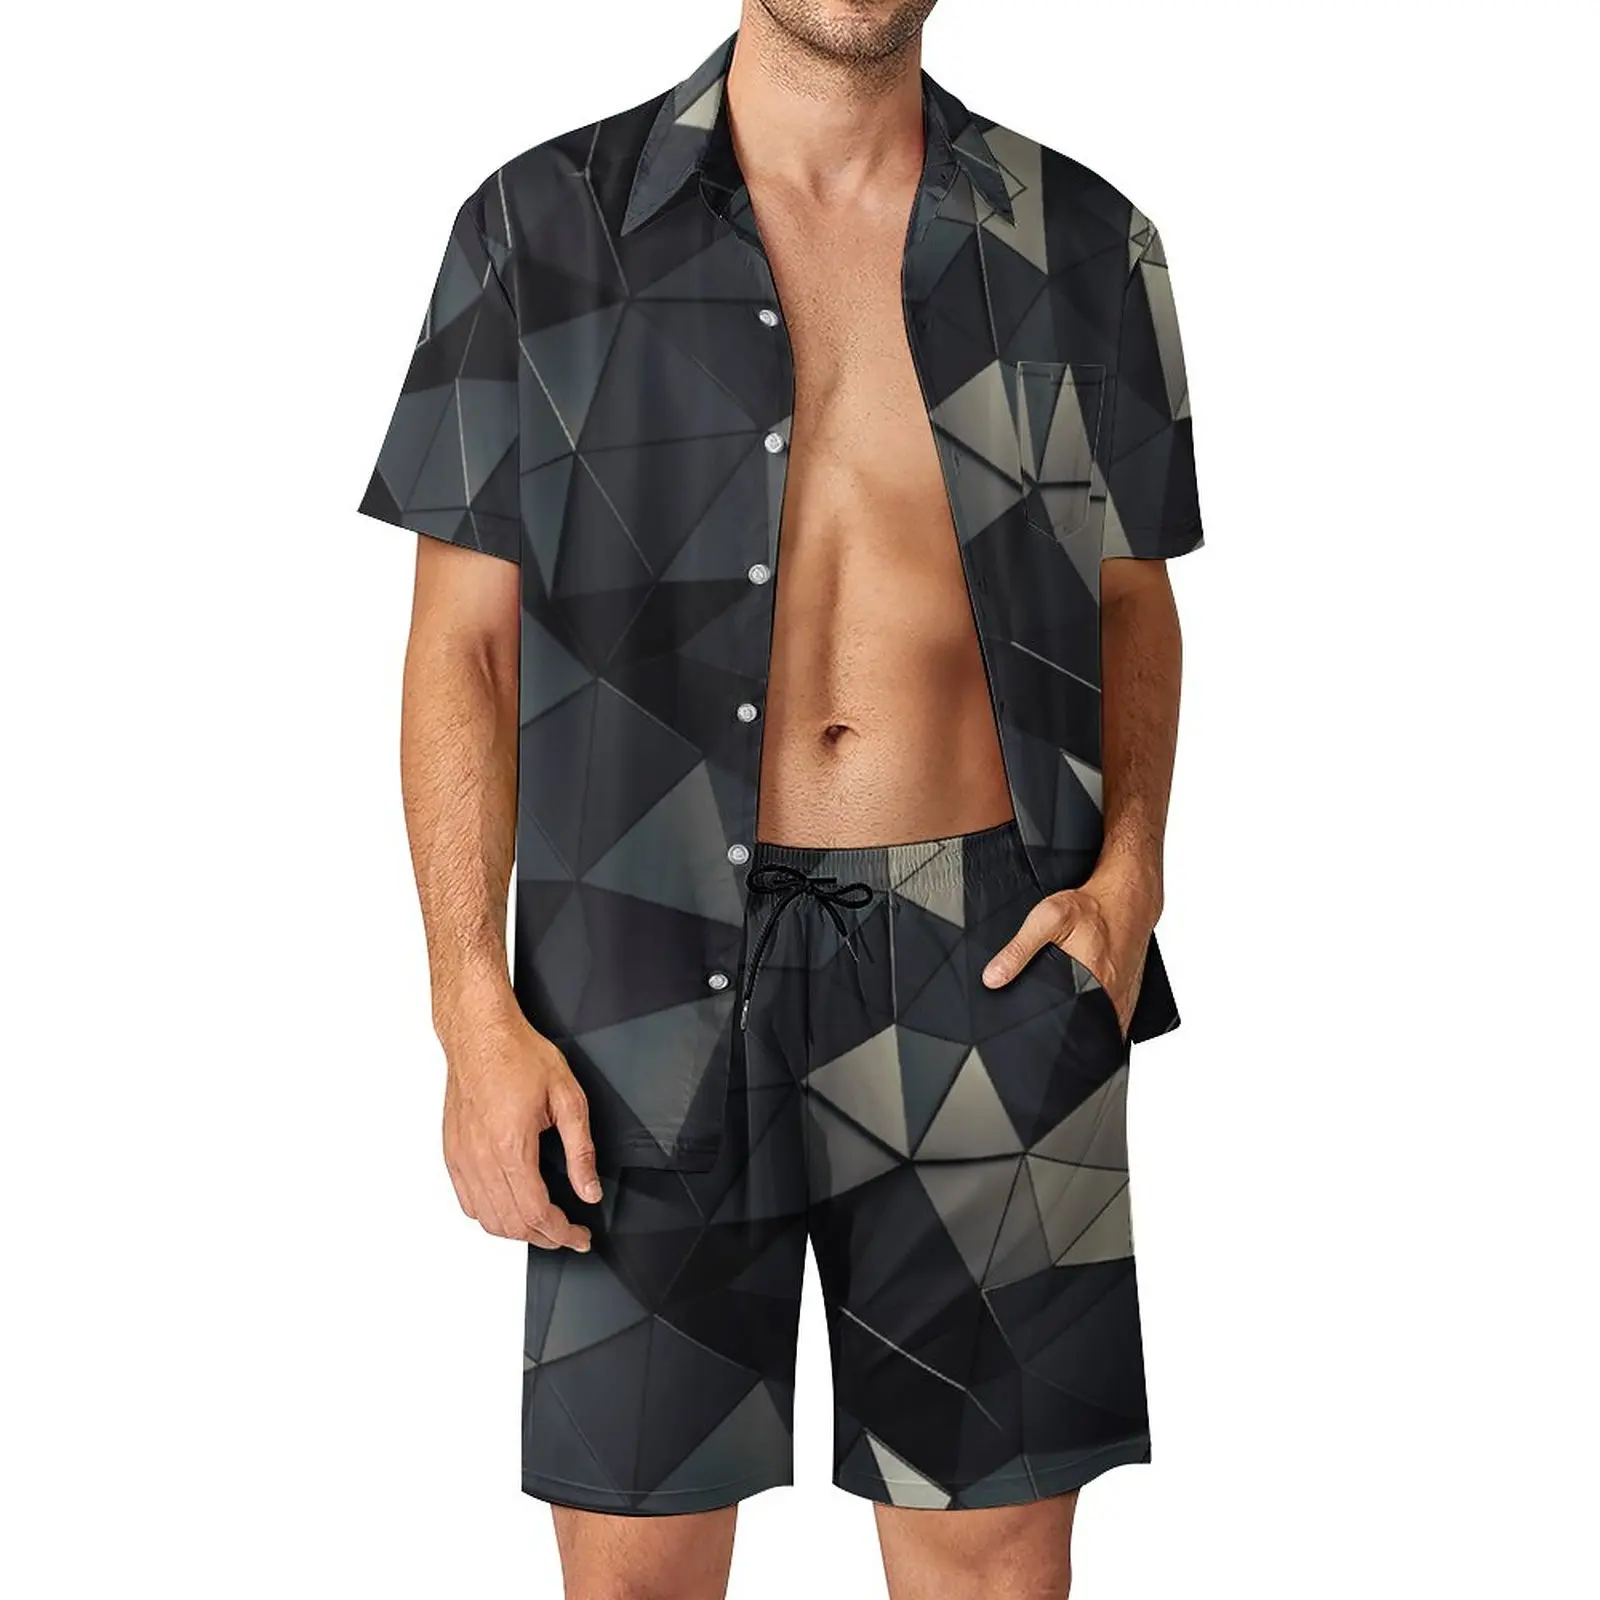 

2 Pieces Coordinates Polygon And Noir Vintage Men's Beach Suit Hot Sale Home USA Size